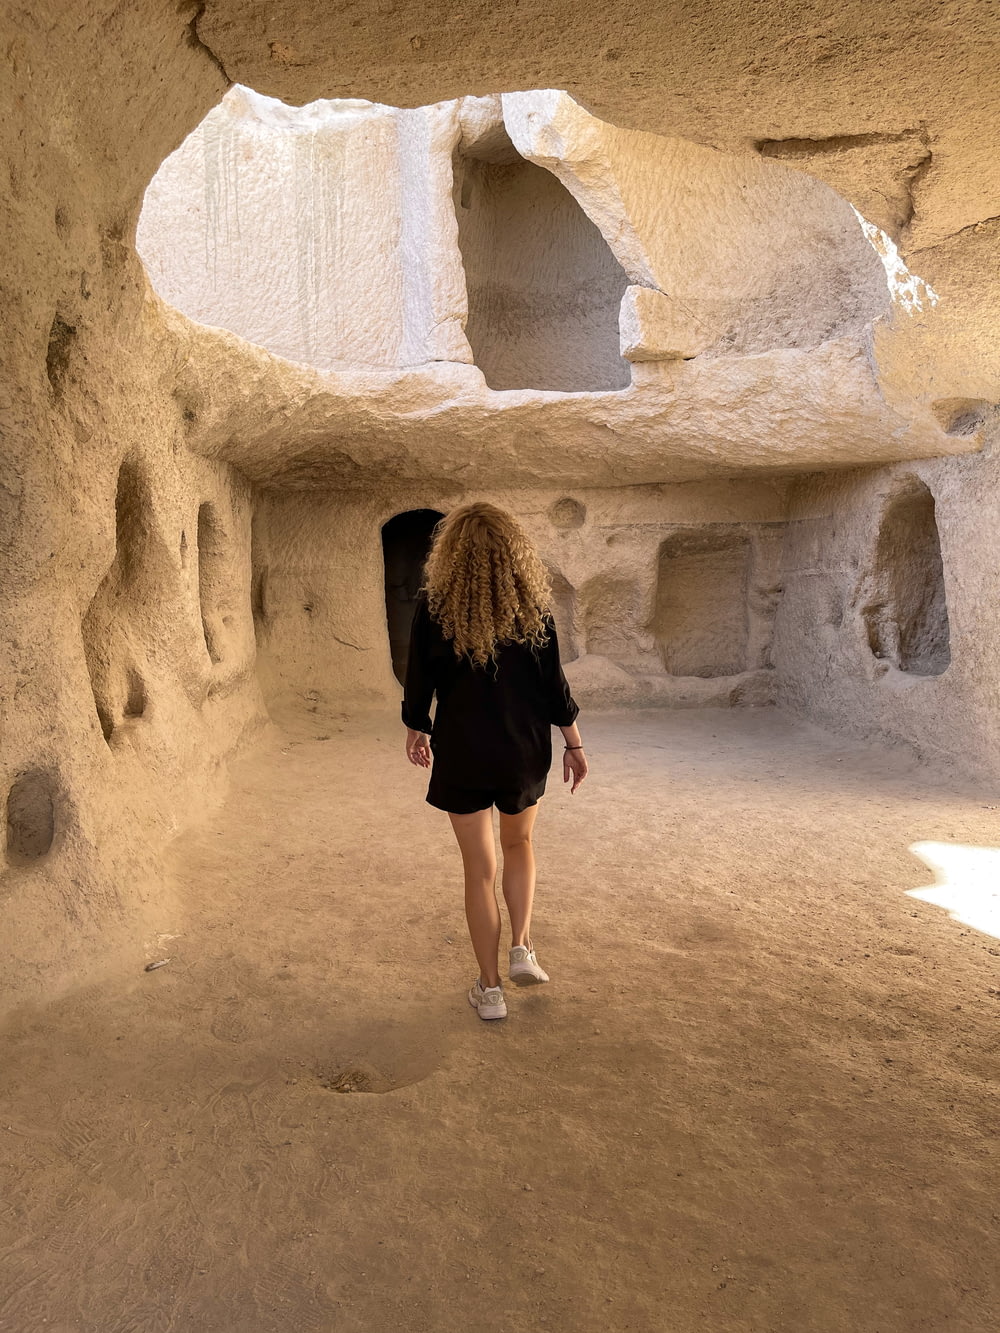 Una mujer está caminando por un área similar a una cueva